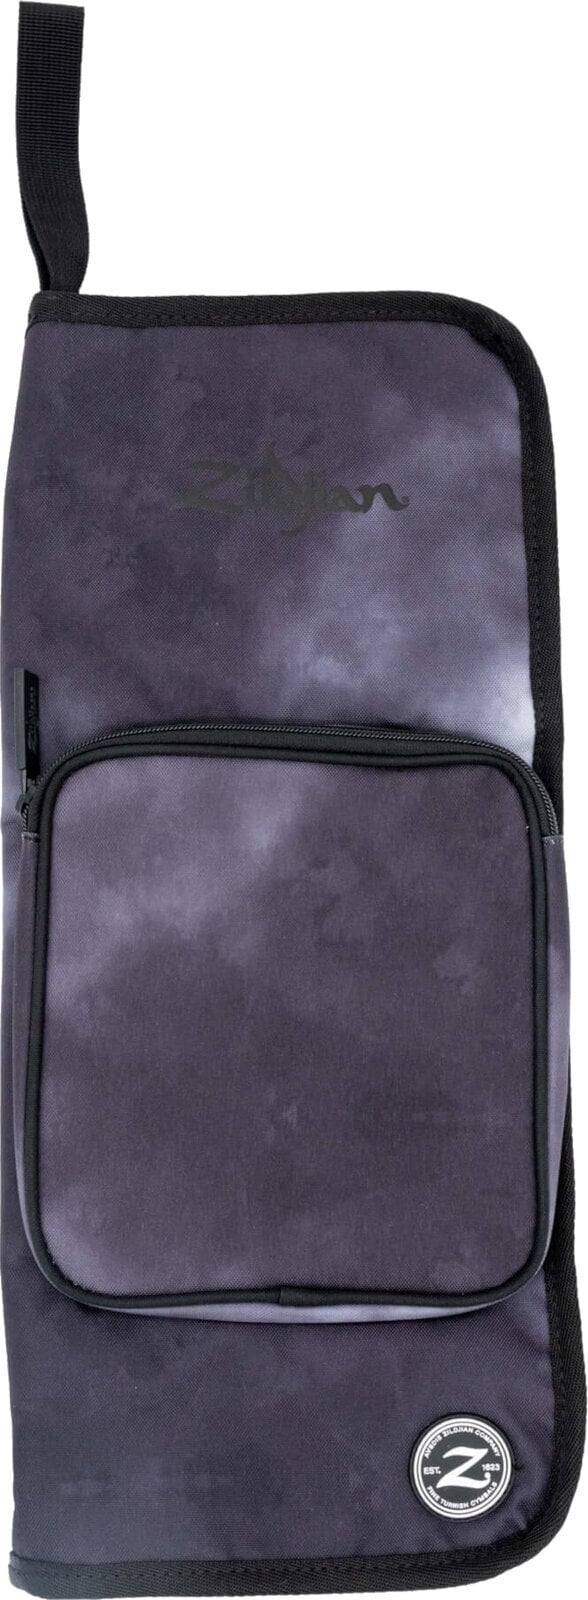 Tasche für Schlagzeugstock Zildjian Student Stick Bag Black Rain Cloud Tasche für Schlagzeugstock